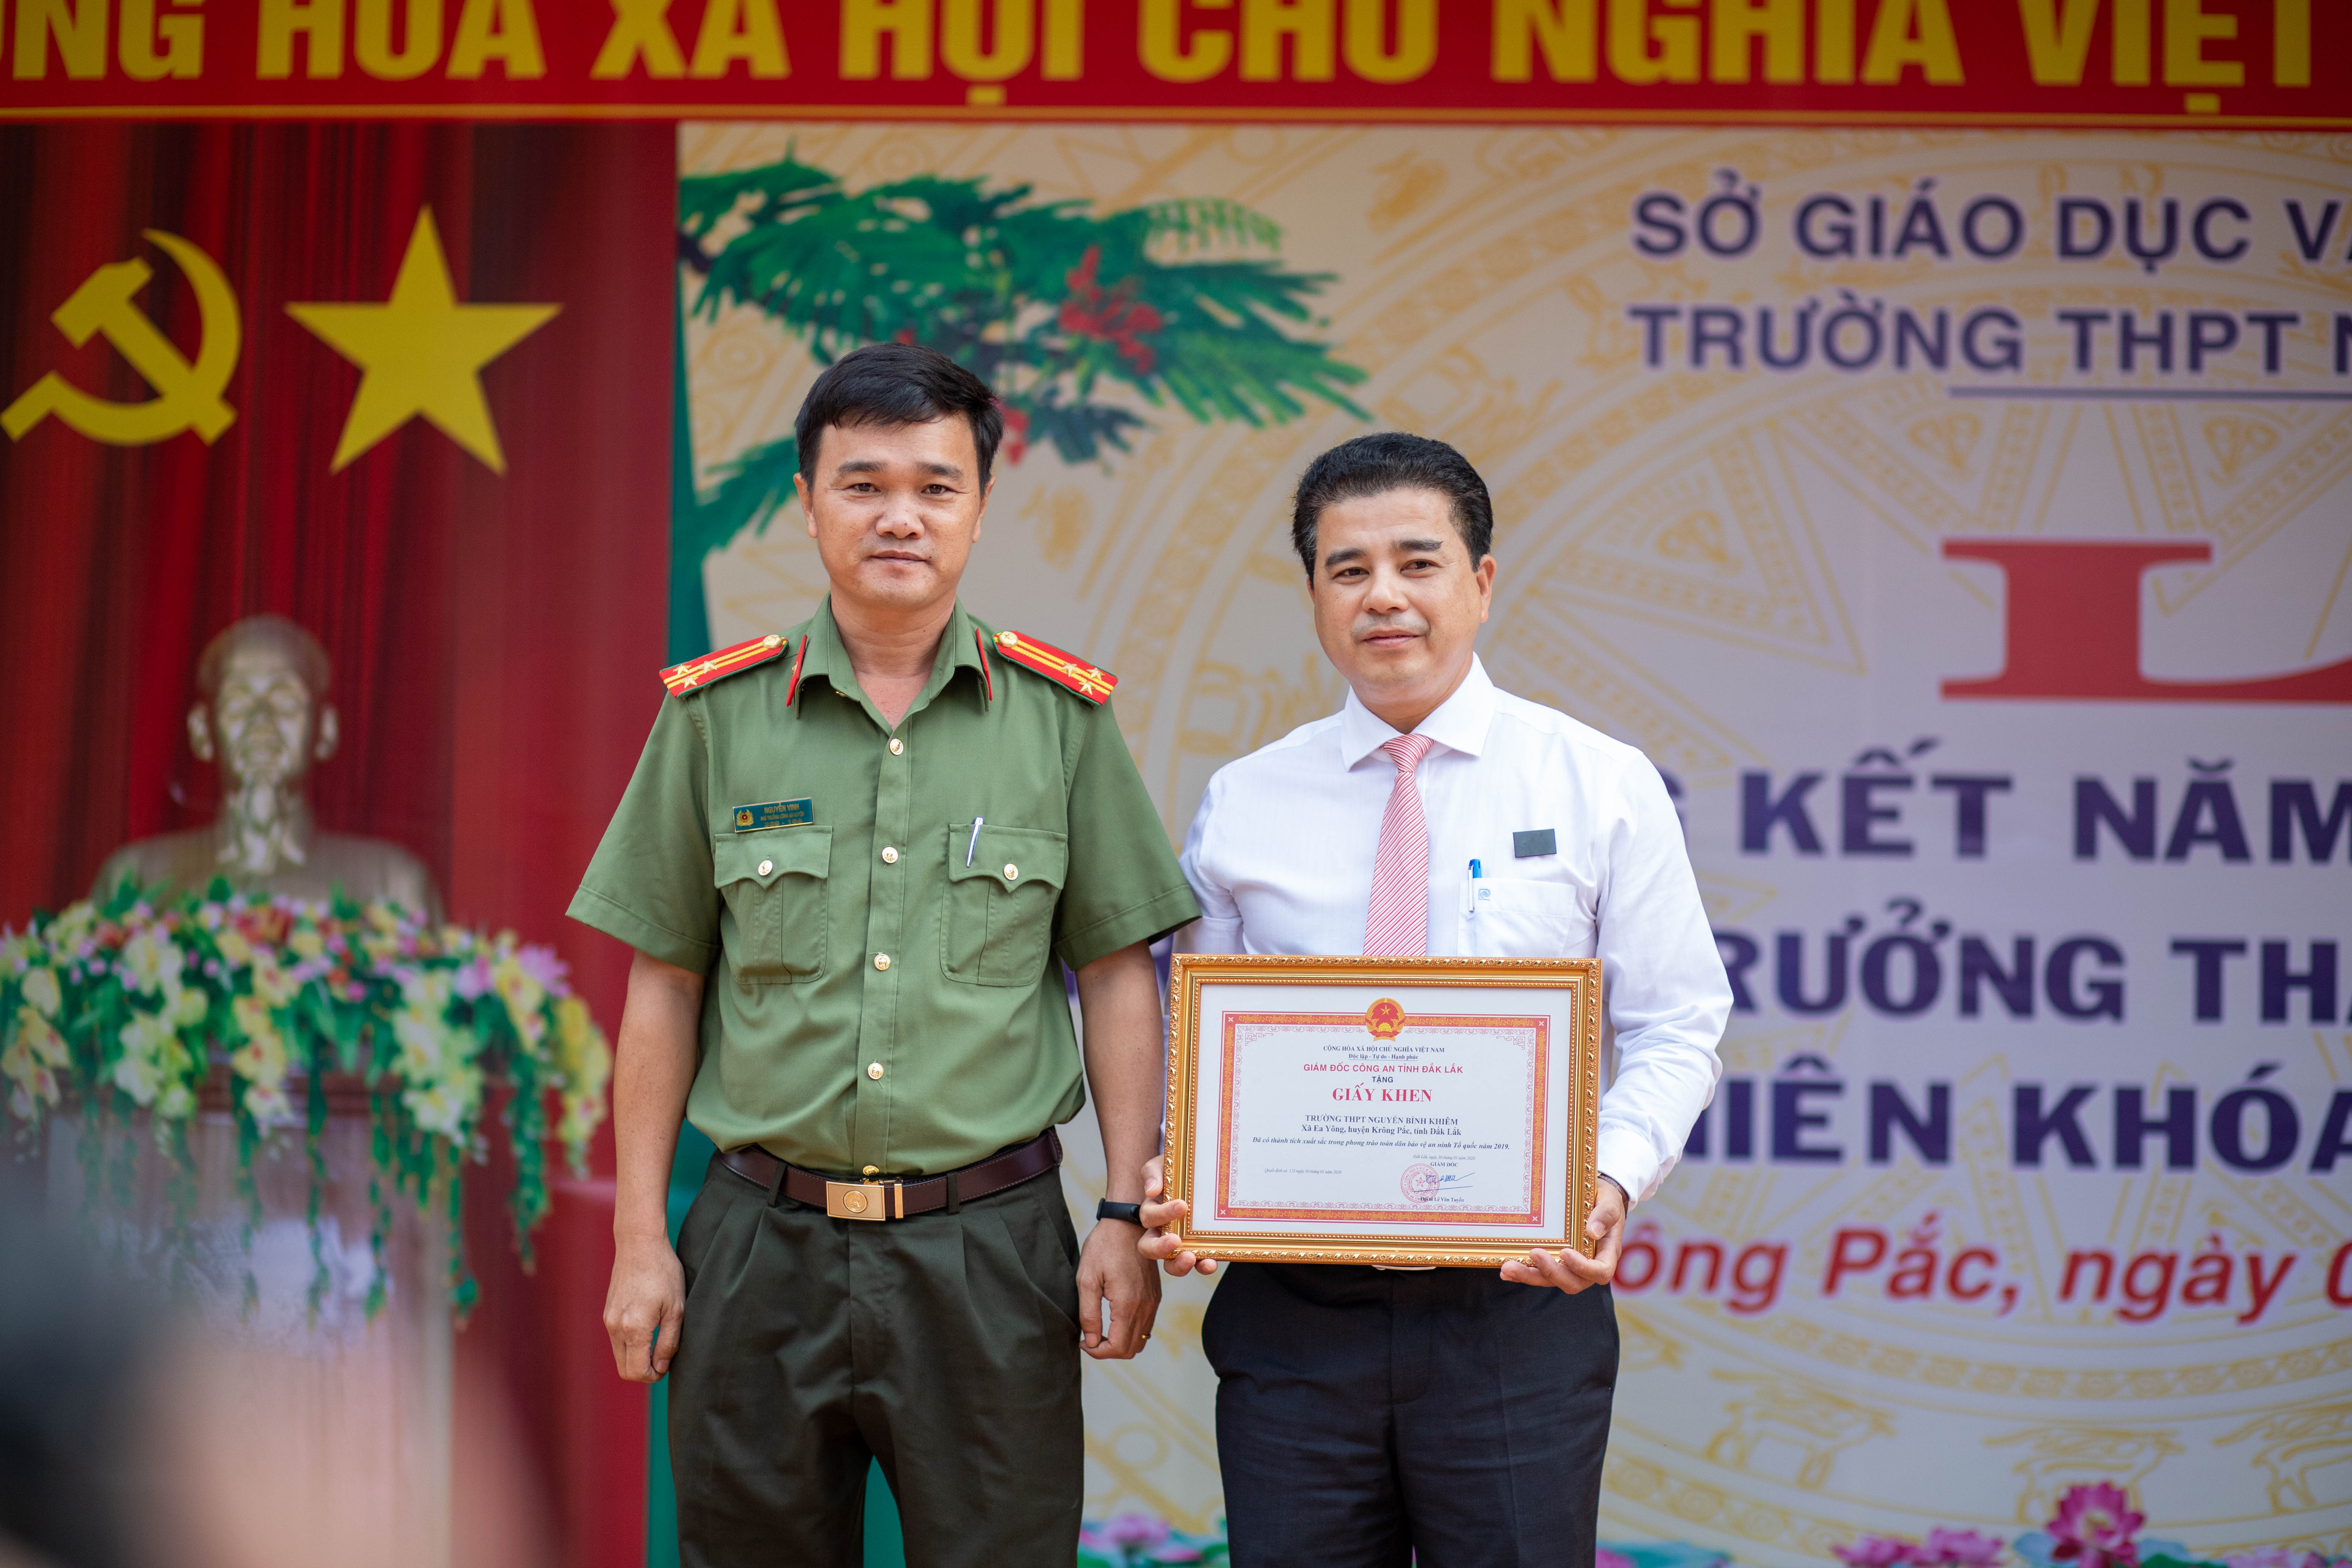 Đ/c Nguyễn Vinh - Phó trưởng Công an huyện Krông Pắc trao Giấy khen của Giám đốc Công an tỉnh Đắk Lắk cho Nhà trường